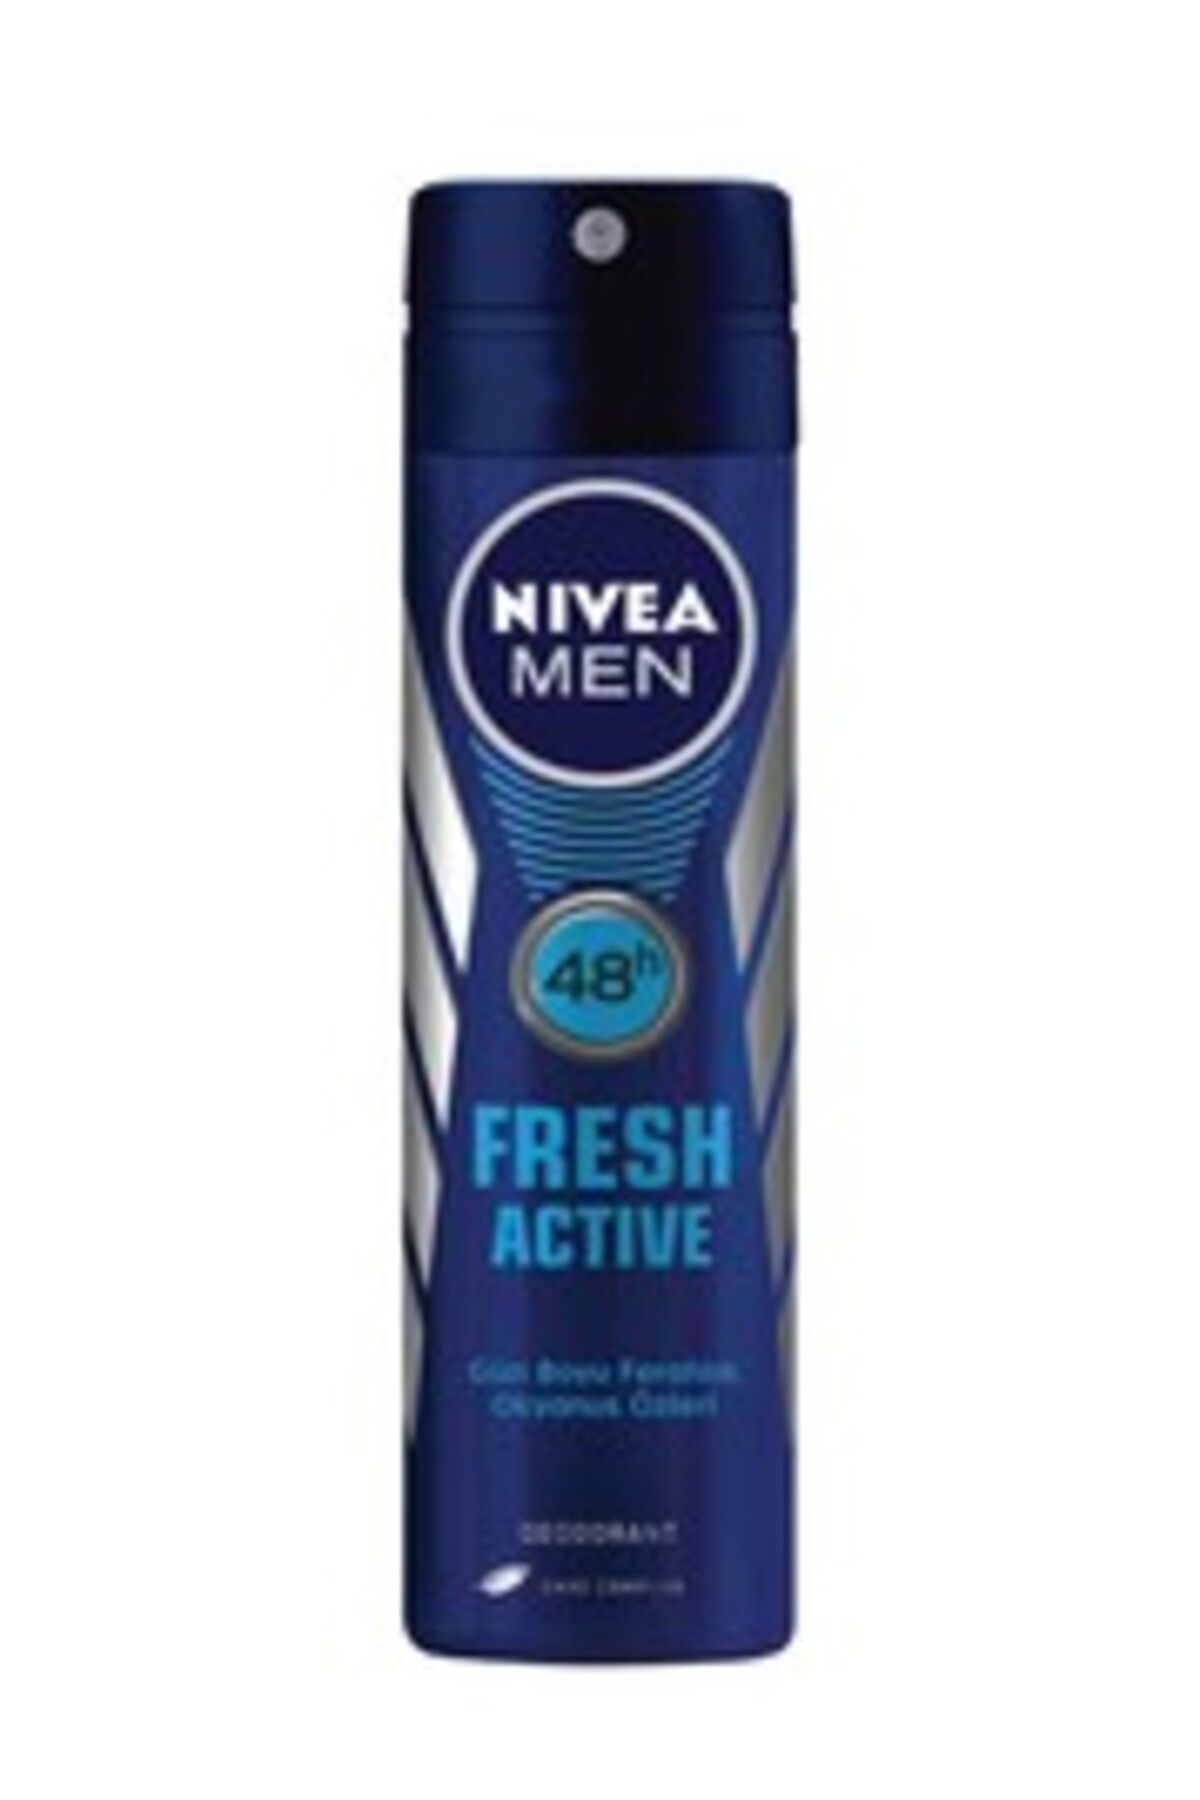 NIVEA ( 1 ADET ) Nivea Men Fresh Active Deodorant Sprey 150 Ml ( KÜÇÜK KOLONYA HEDİYE )